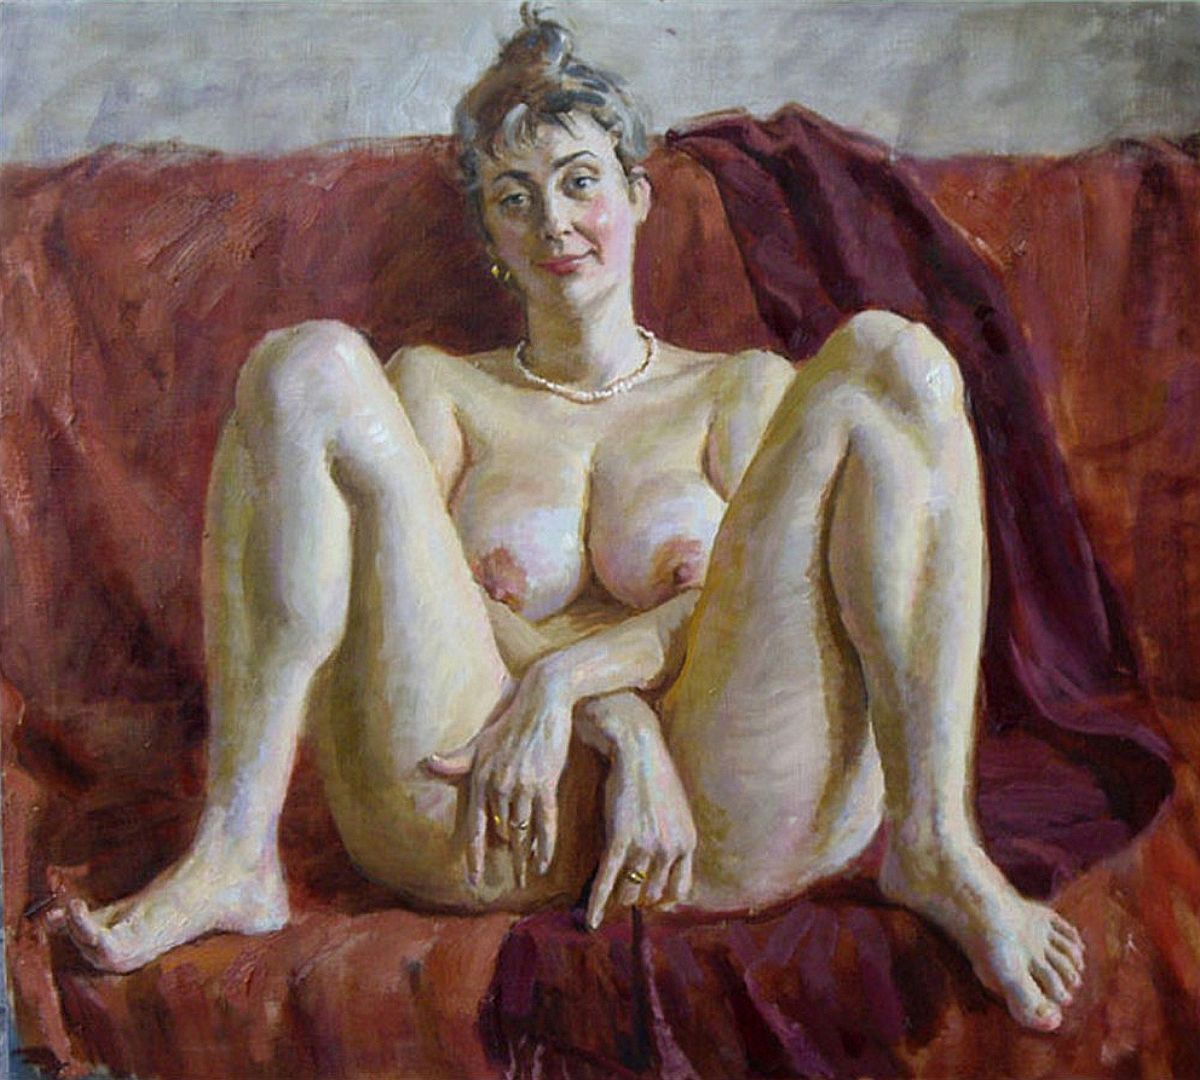 портрет жены художника сидящей с ногами на диване, широко раздвинув колени, картинка с толстой женщиной